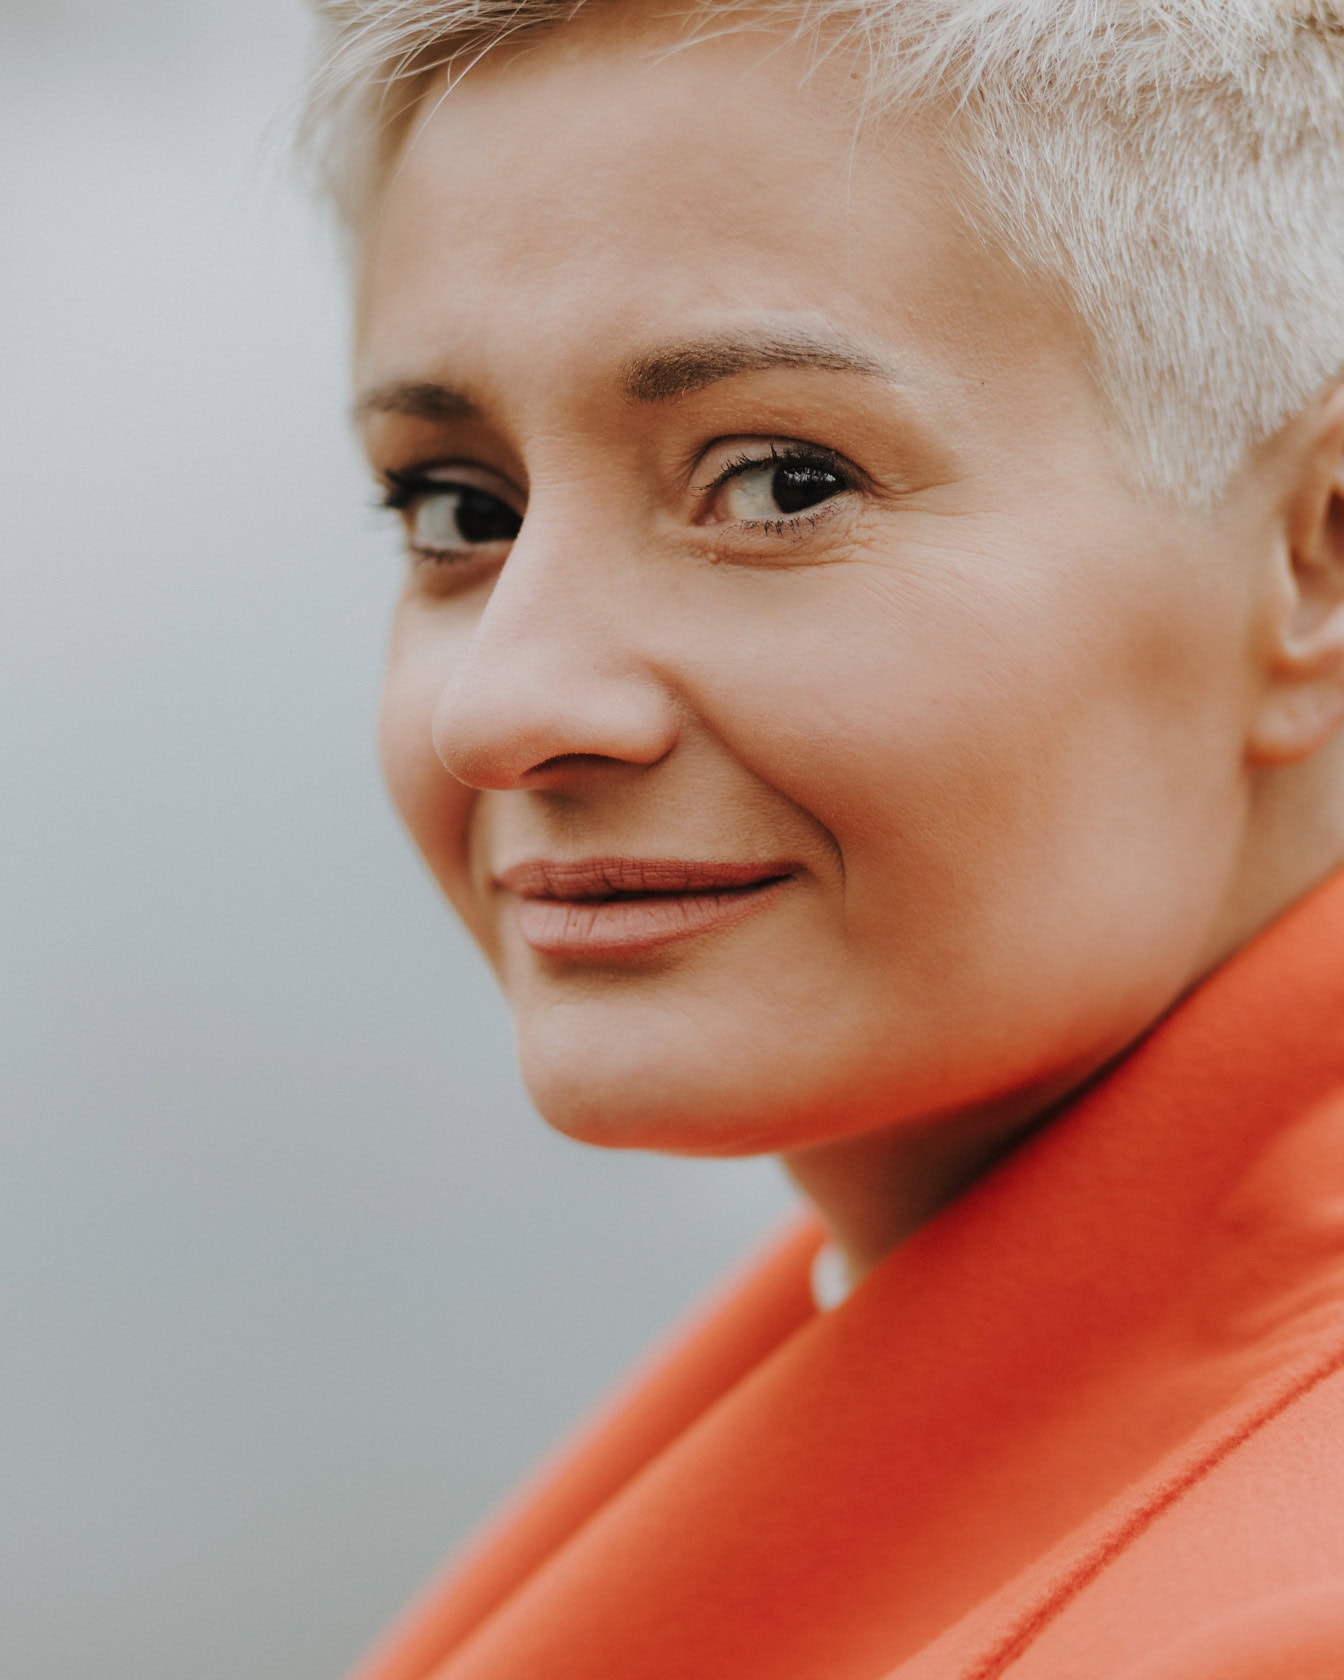 Gezichtsportret van een jonge vrouw met een kort blond kapsel met discrete make-up in een oranje jasje